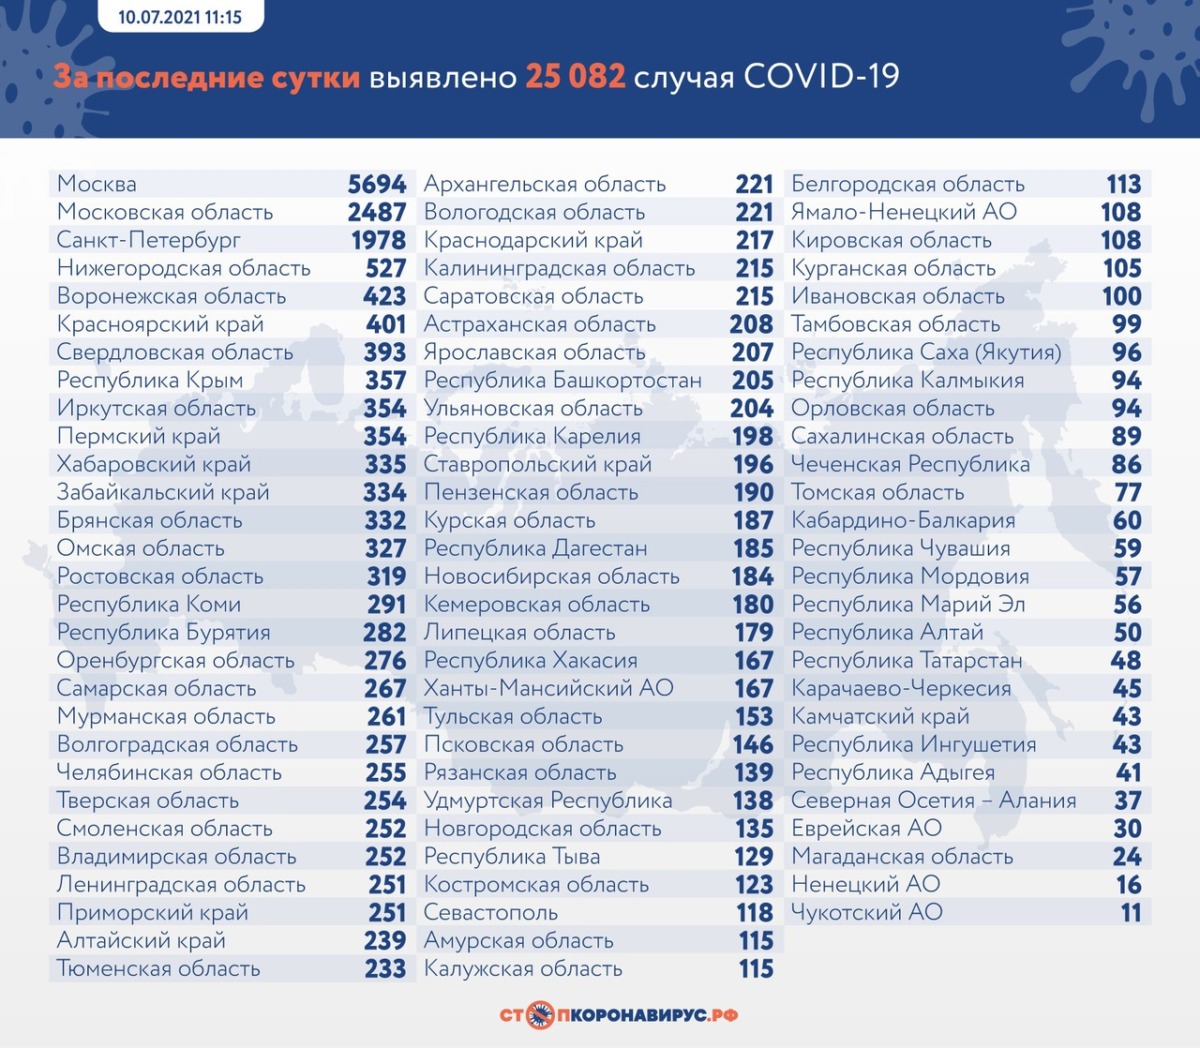 25 082 новых случая коронавируса выявили в России 10 июля